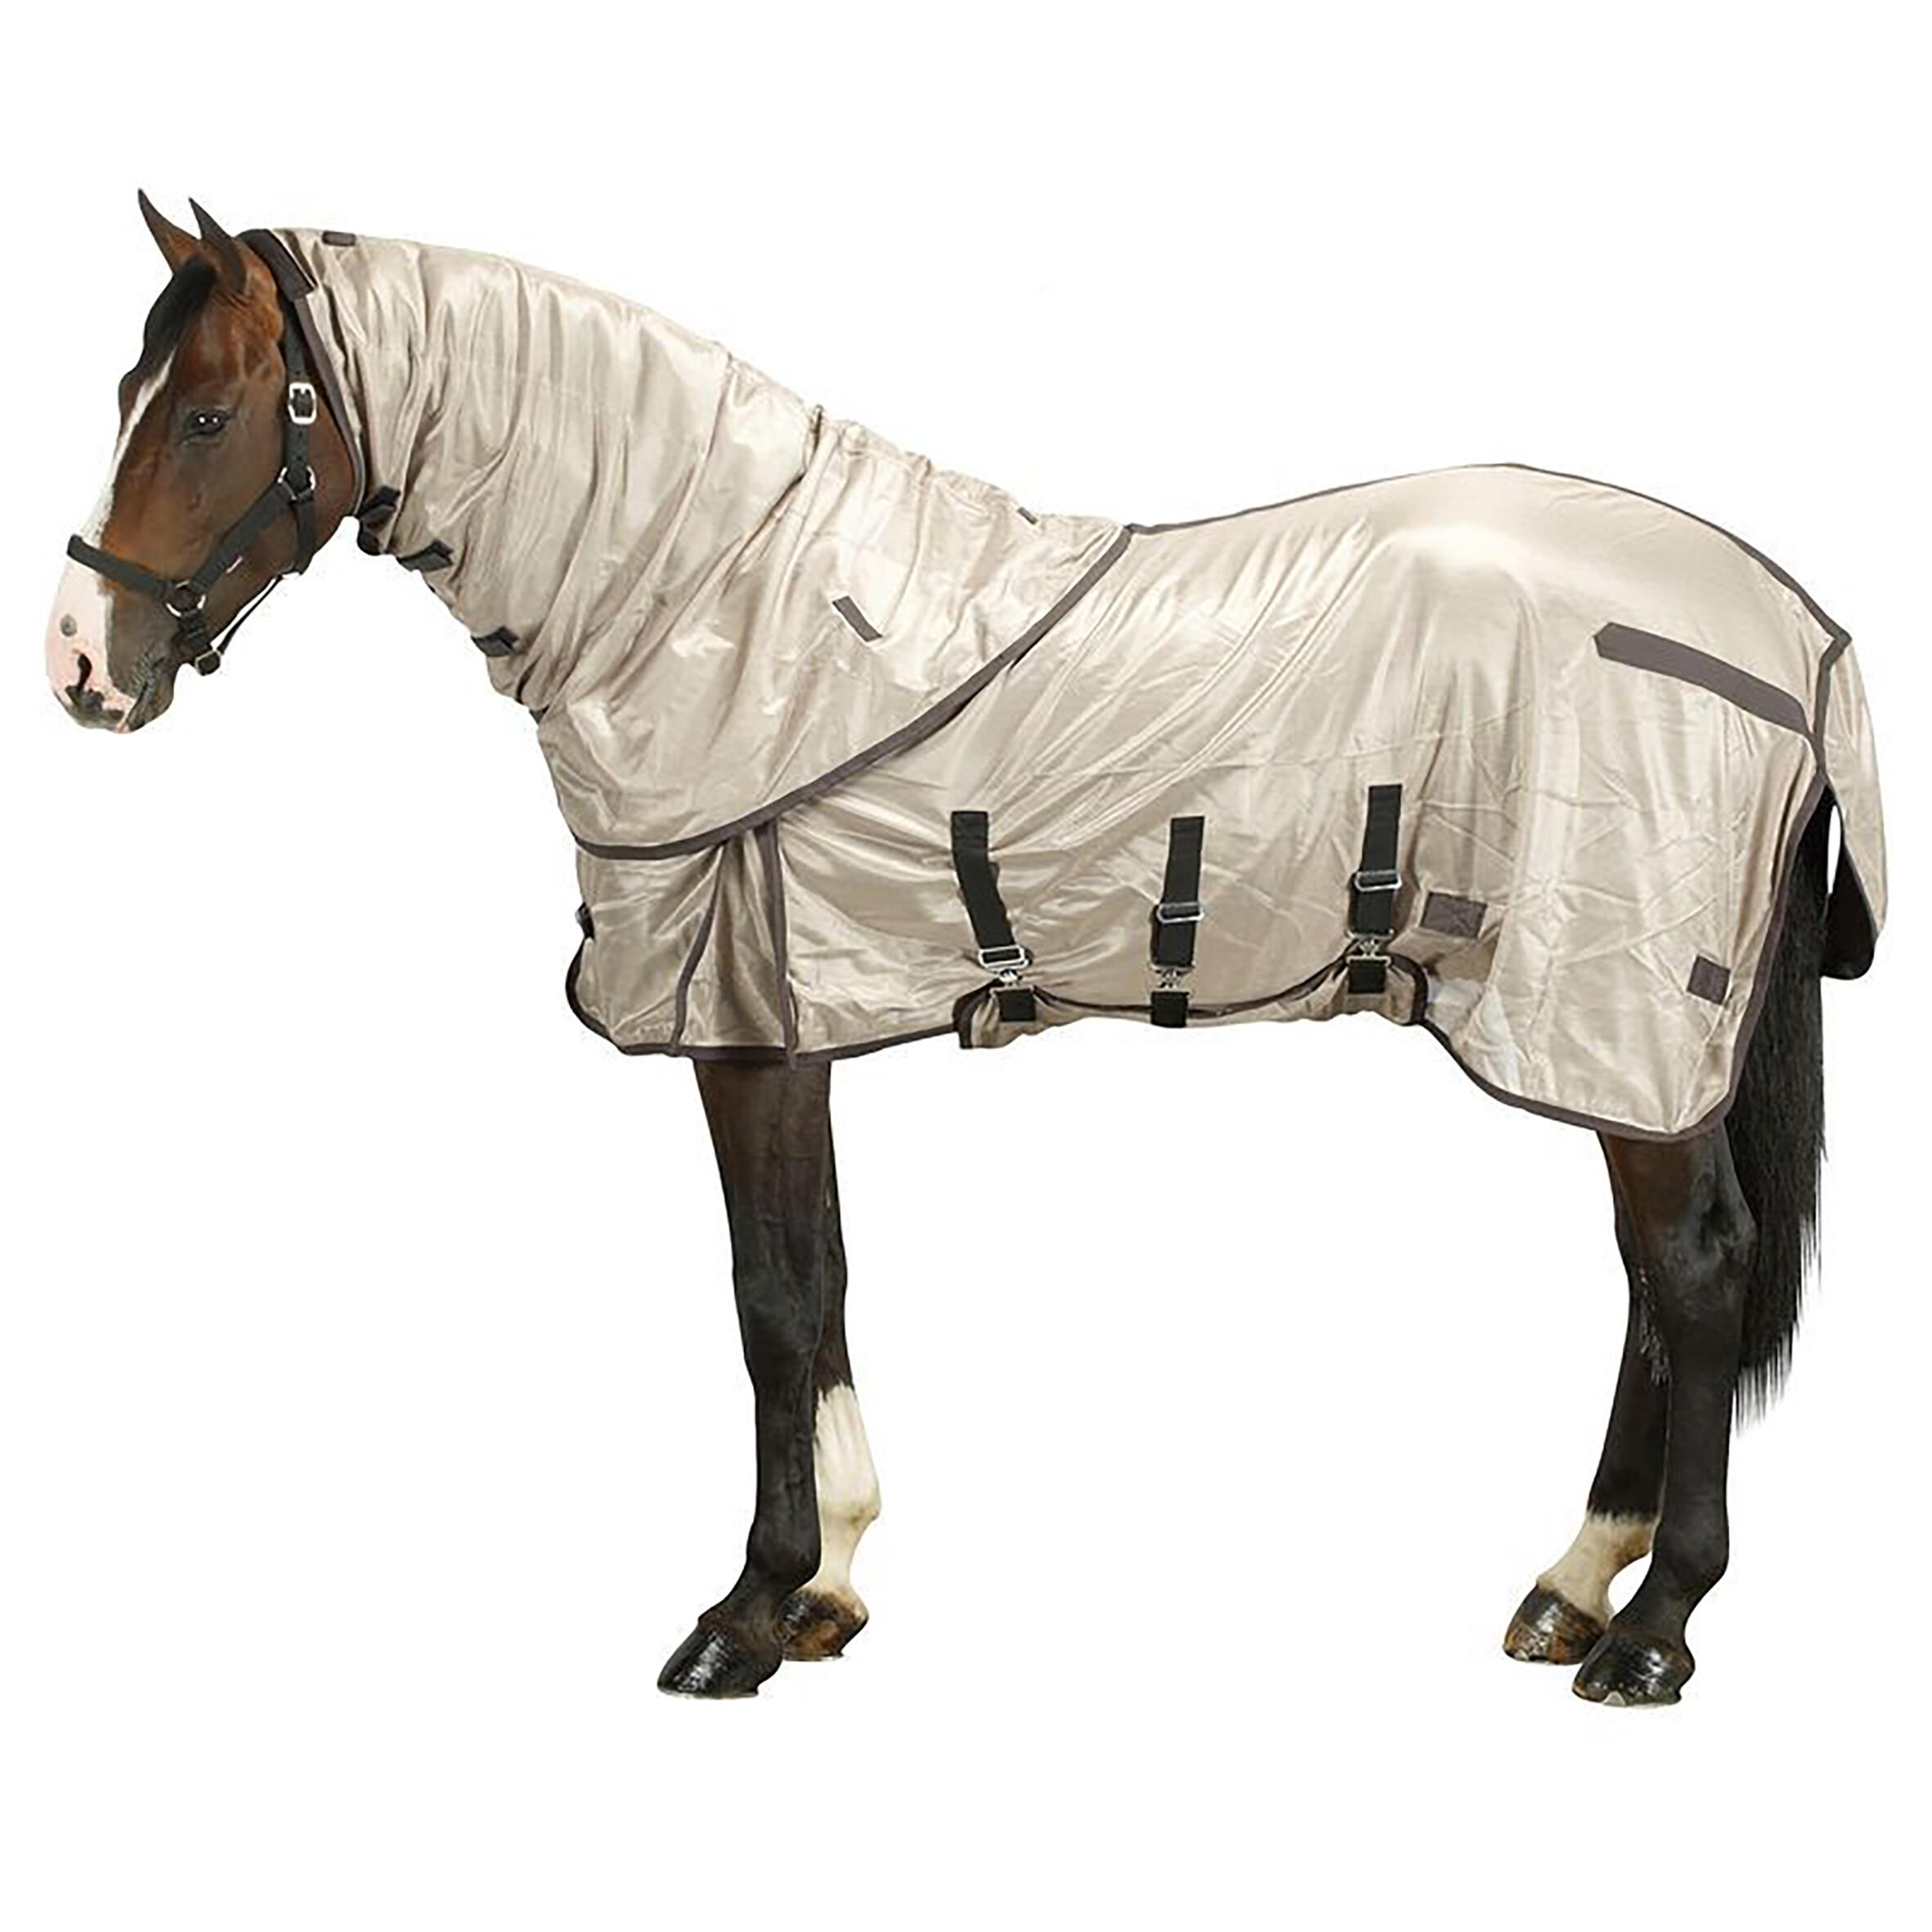 Pătură Protecţie Insecte echitație cai/ponei Bej anti-insecte  Echipament de ingrijire cal